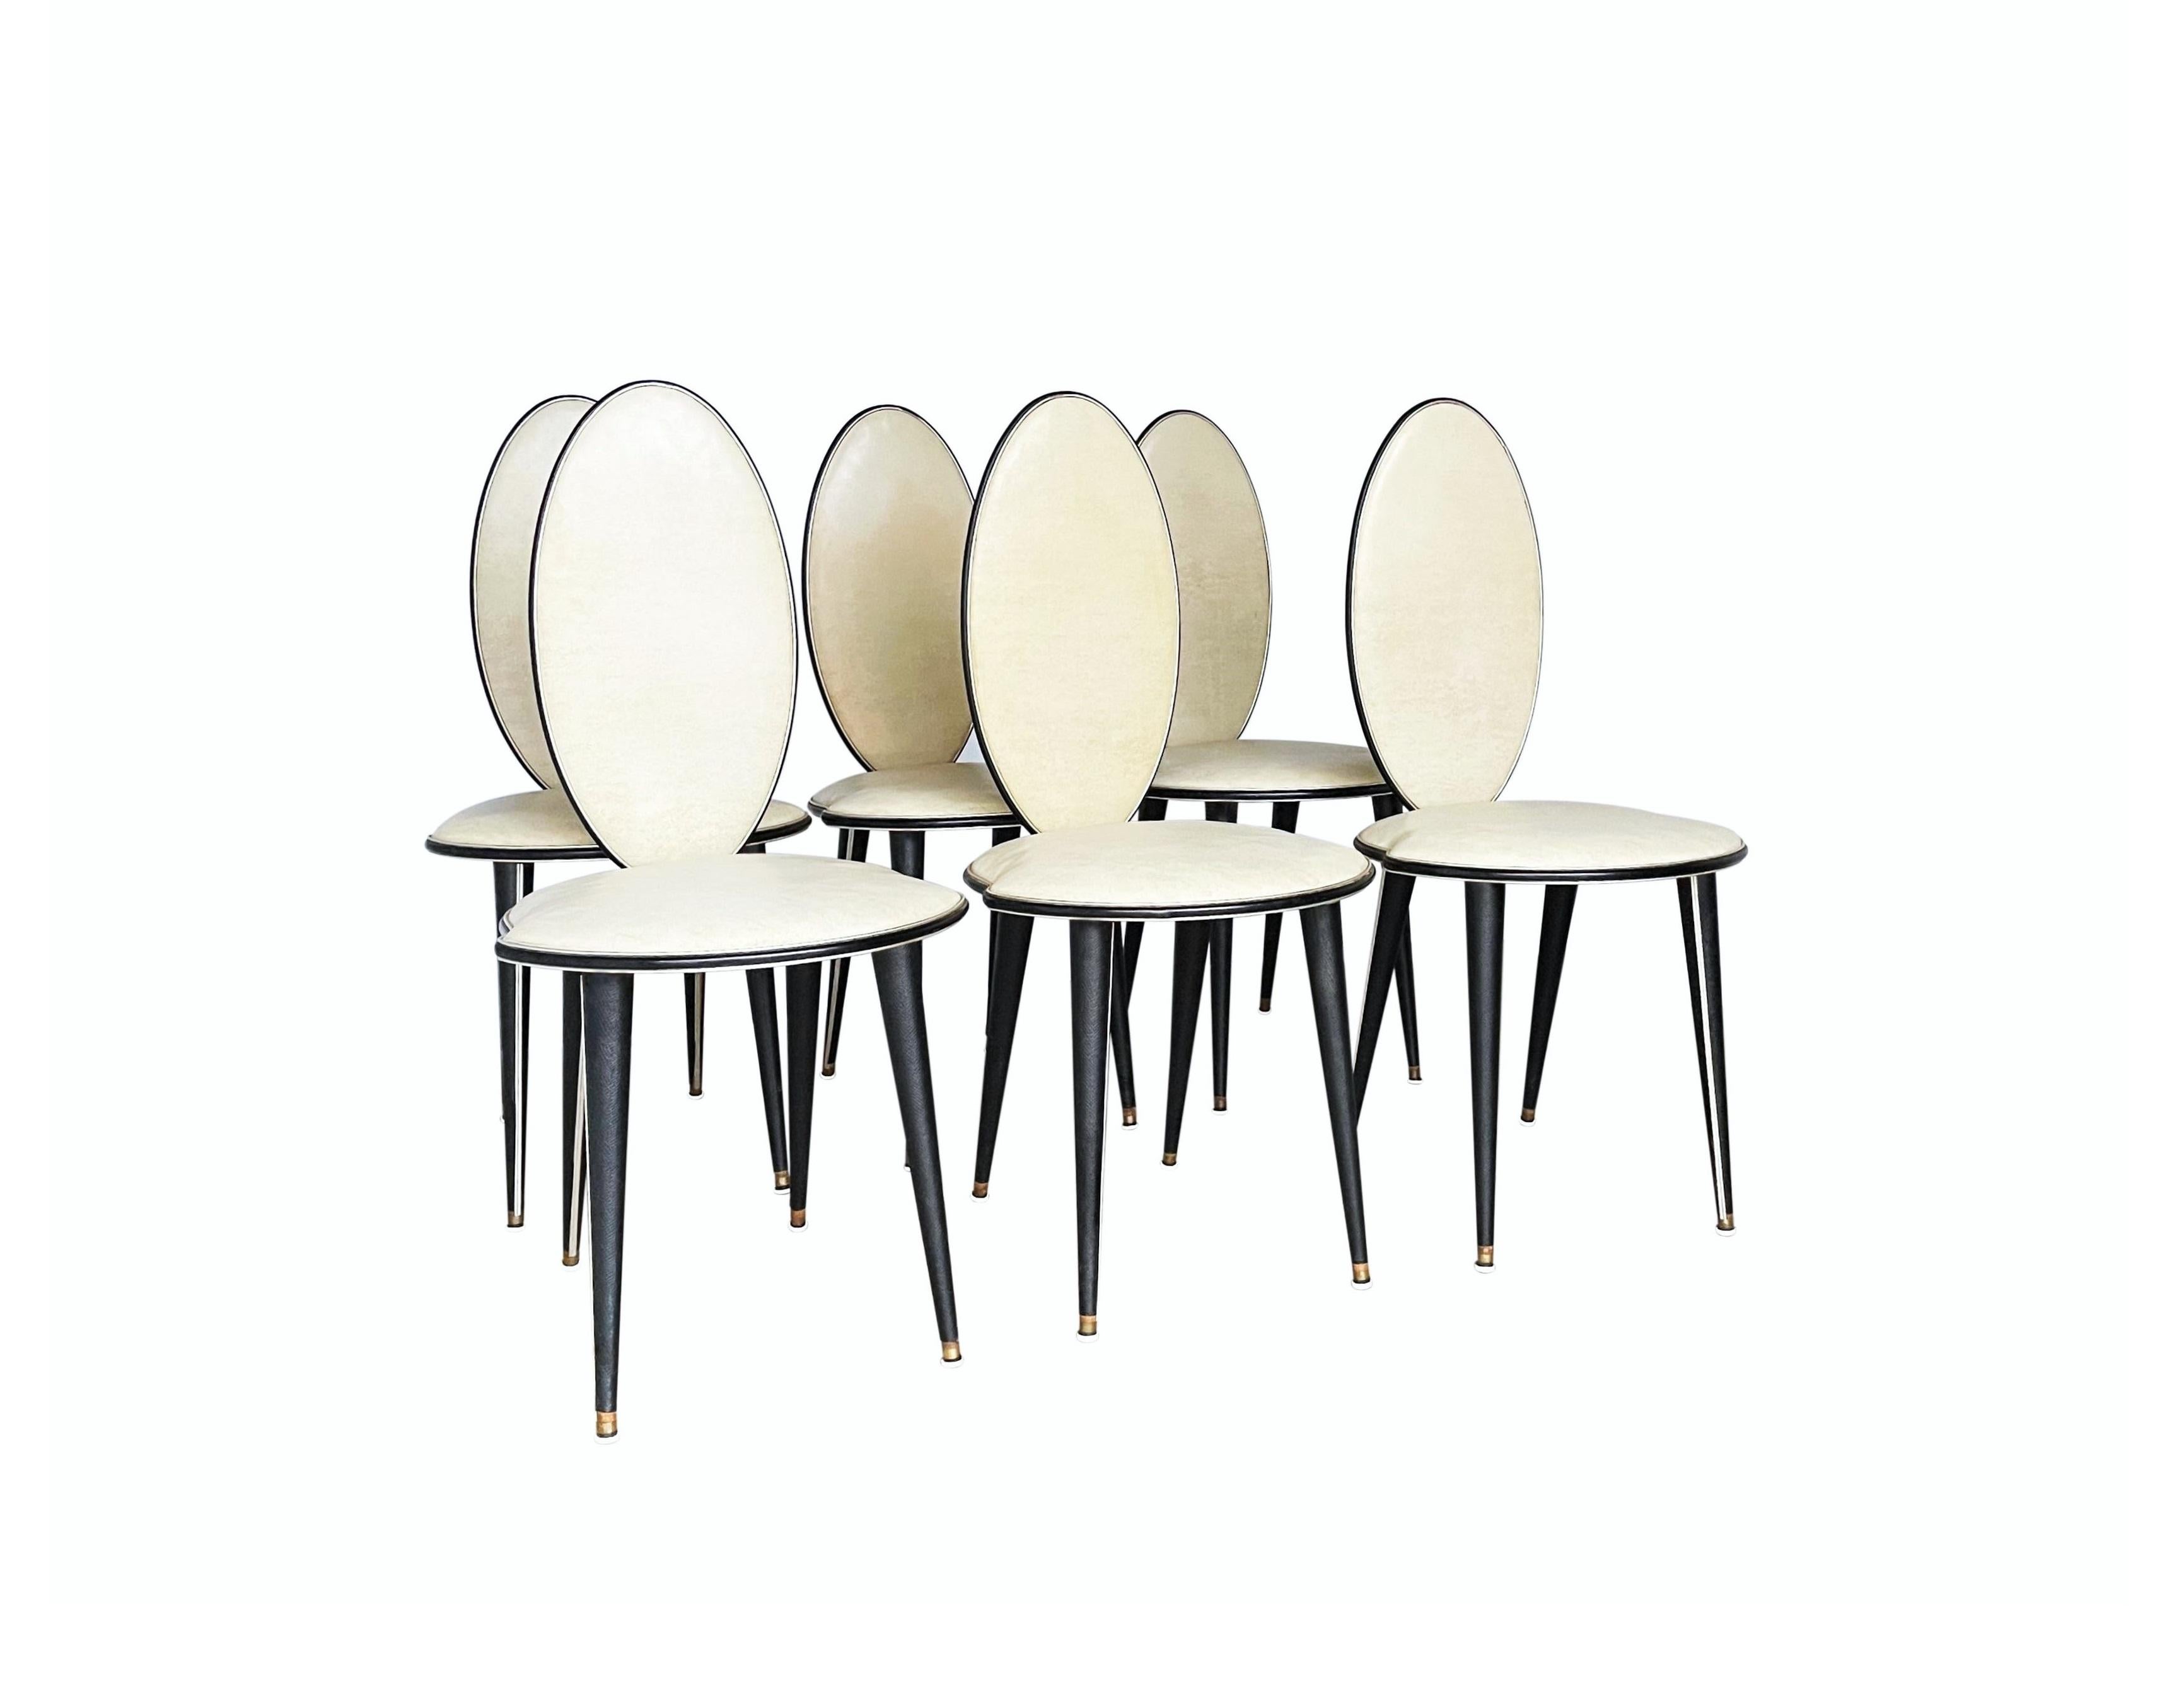 Diese atemberaubenden und höchst ungewöhnlichen Esszimmerstühle wurden 1952 von Umberto Mascagni aus Bologna, Italien, entworfen. I. Barget, Ltd. in London (